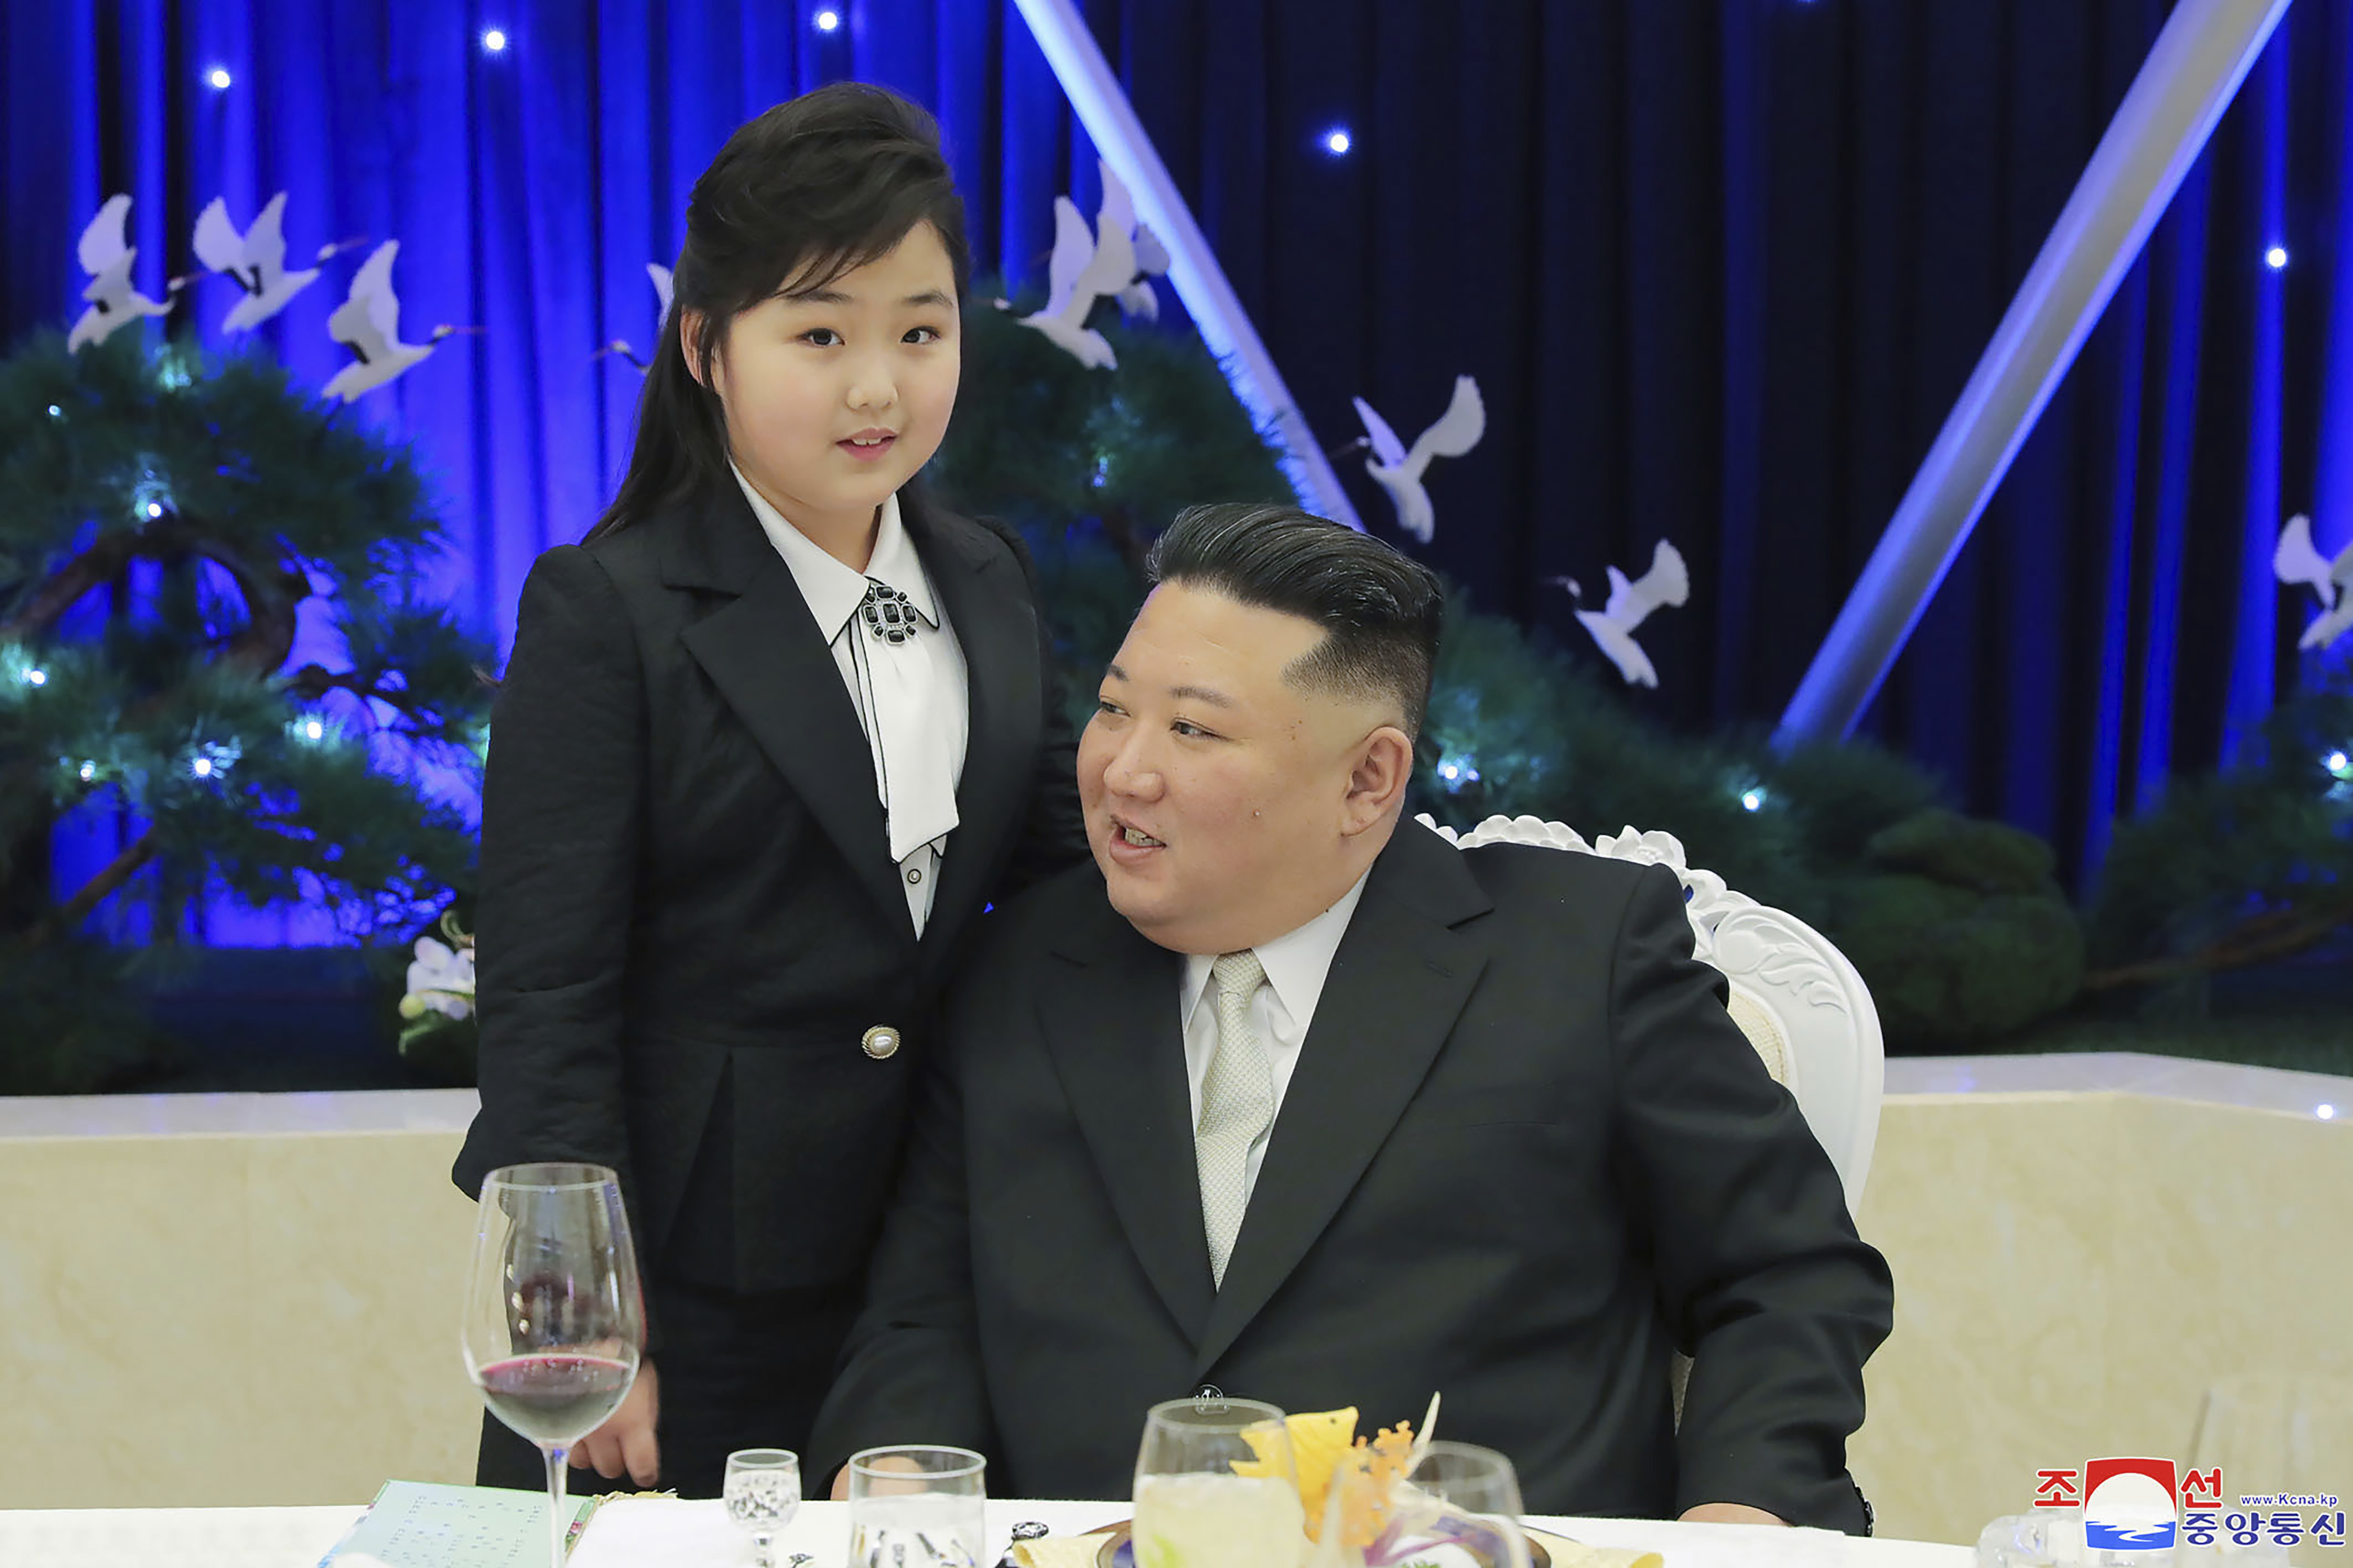 Kim Jong Un y su hija durante un fiesta para conmemorar el 75to aniversario de la fundación del Ejército Popular  (Agencia Central de Noticias de Corea/Servicio de Noticias de Corea vía AP)